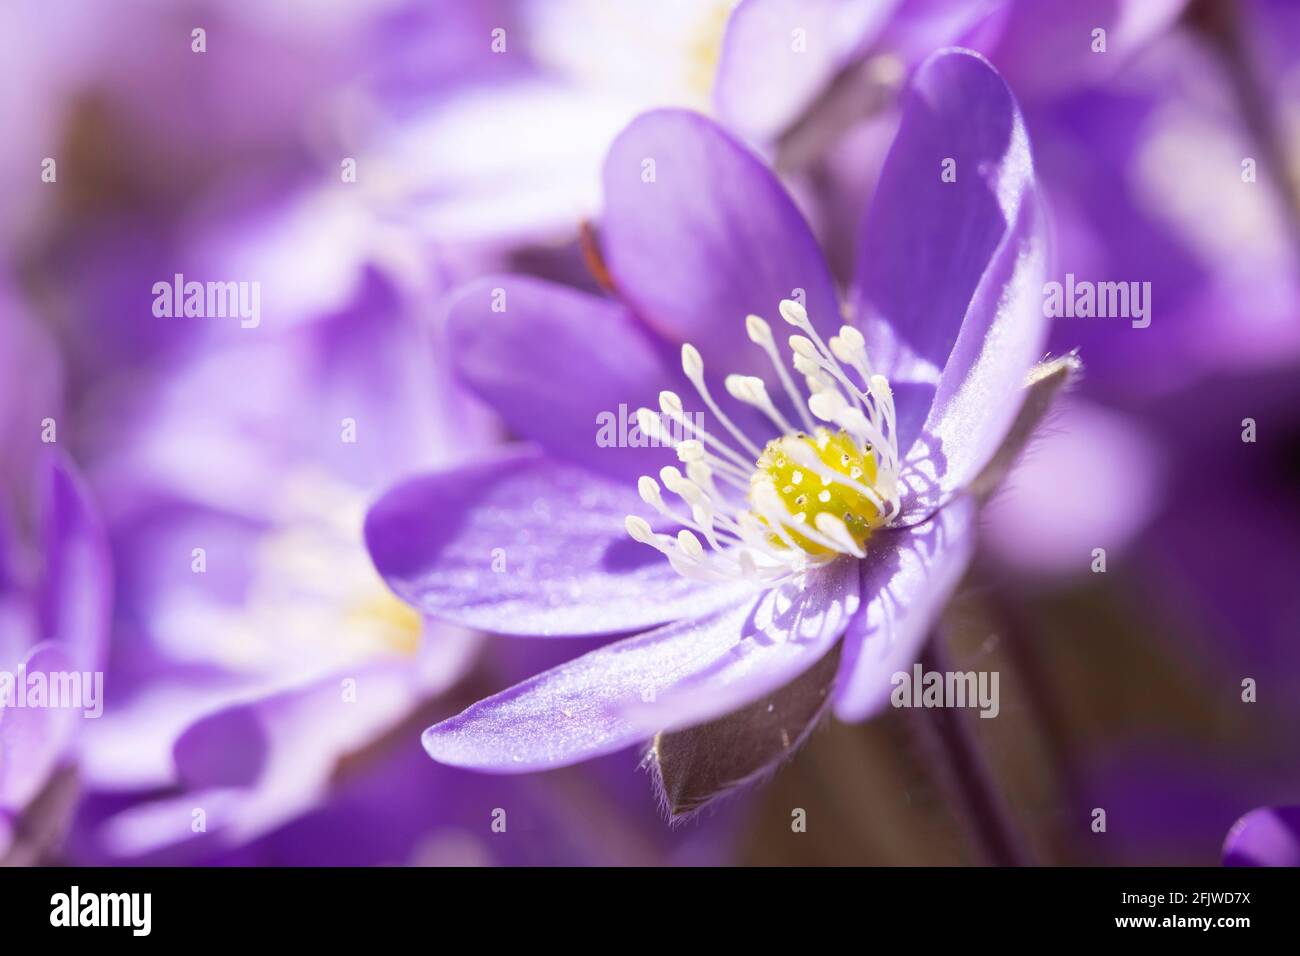 Common hepatica flowers Stock Photo